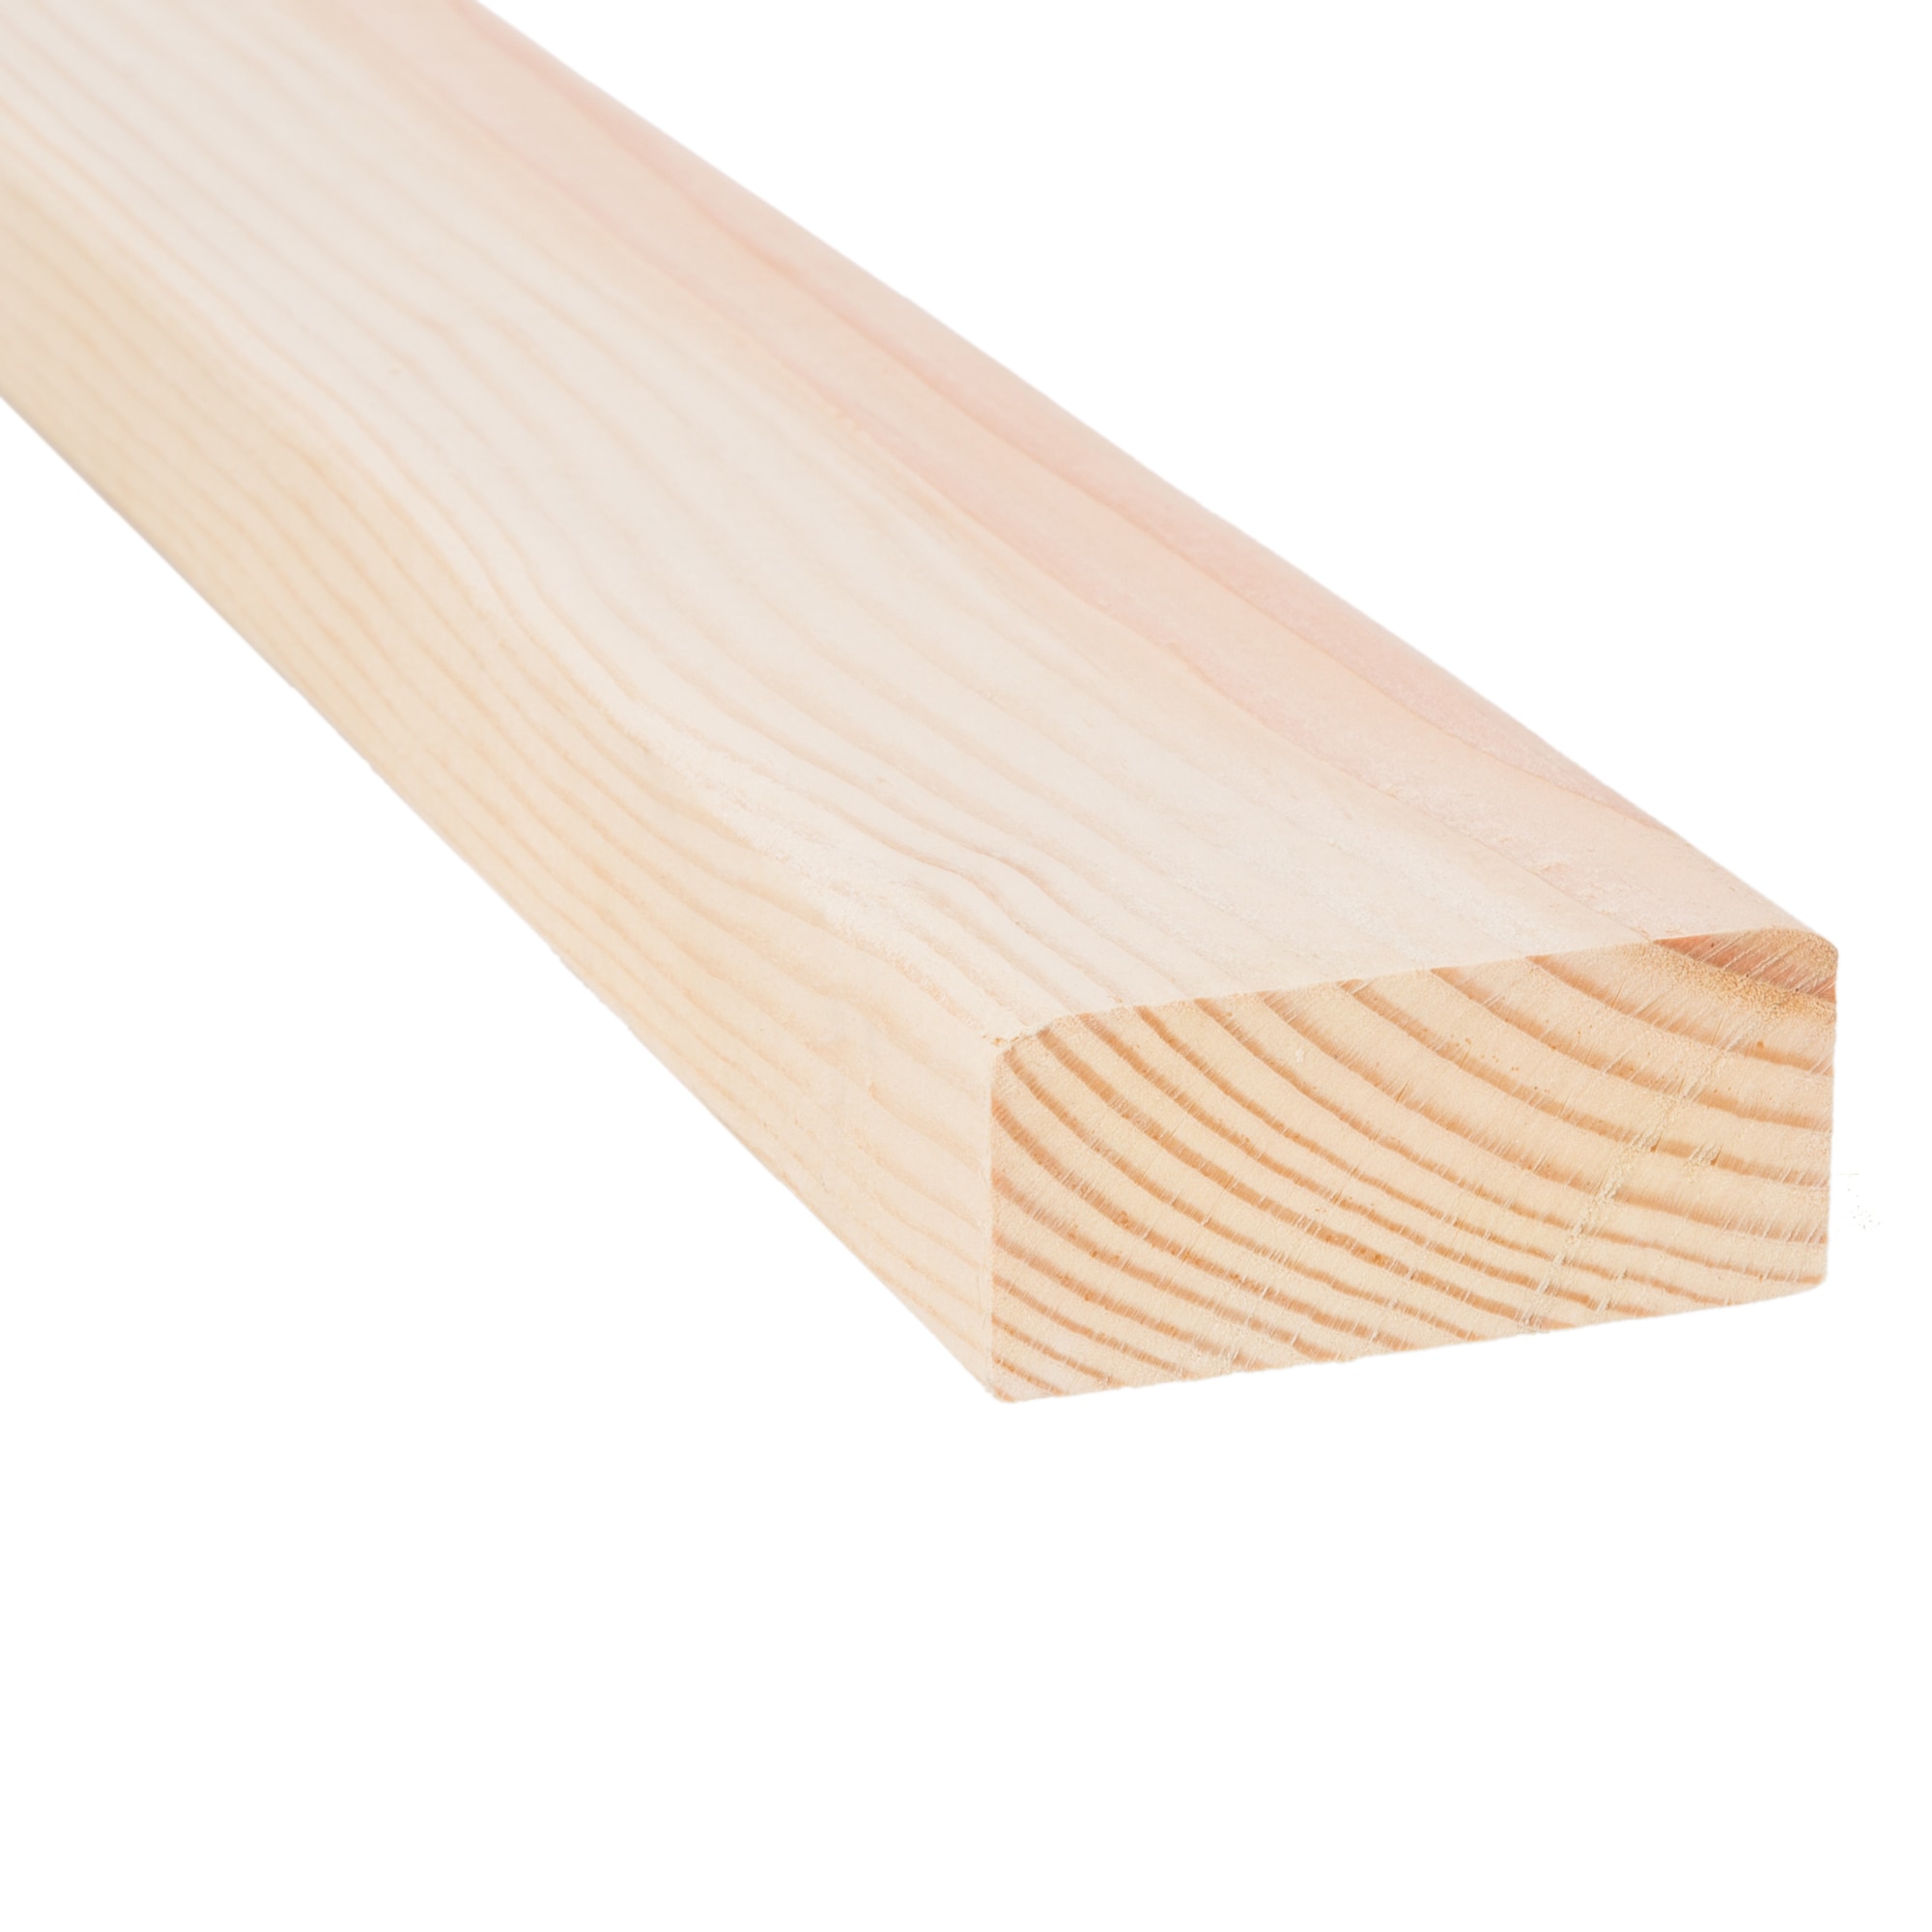 2x4 wood stock photo. Image of studs, pieces, closeup - 88159100